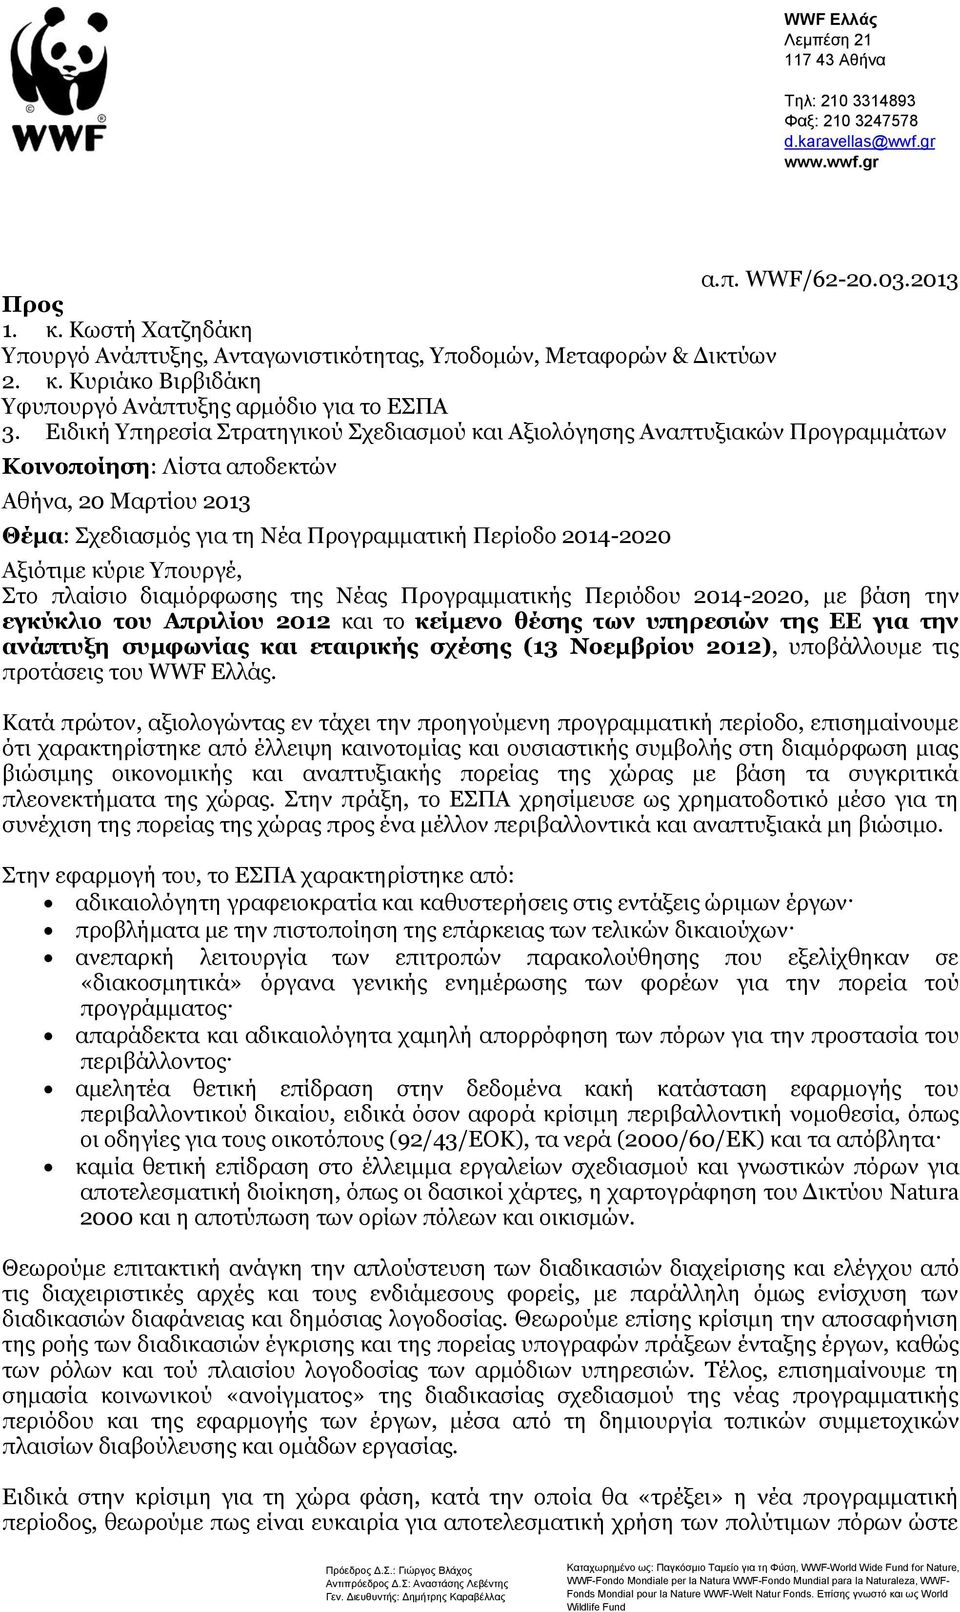 Ειδική Υπηρεσία Στρατηγικού Σχεδιασμού και Αξιολόγησης Αναπτυξιακών Προγραμμάτων Κοινοποίηση: Λίστα αποδεκτών Αθήνα, 20 Μαρτίου 2013 Θέμα: Σχεδιασμός για τη Νέα Προγραμματική Περίοδο 2014-2020